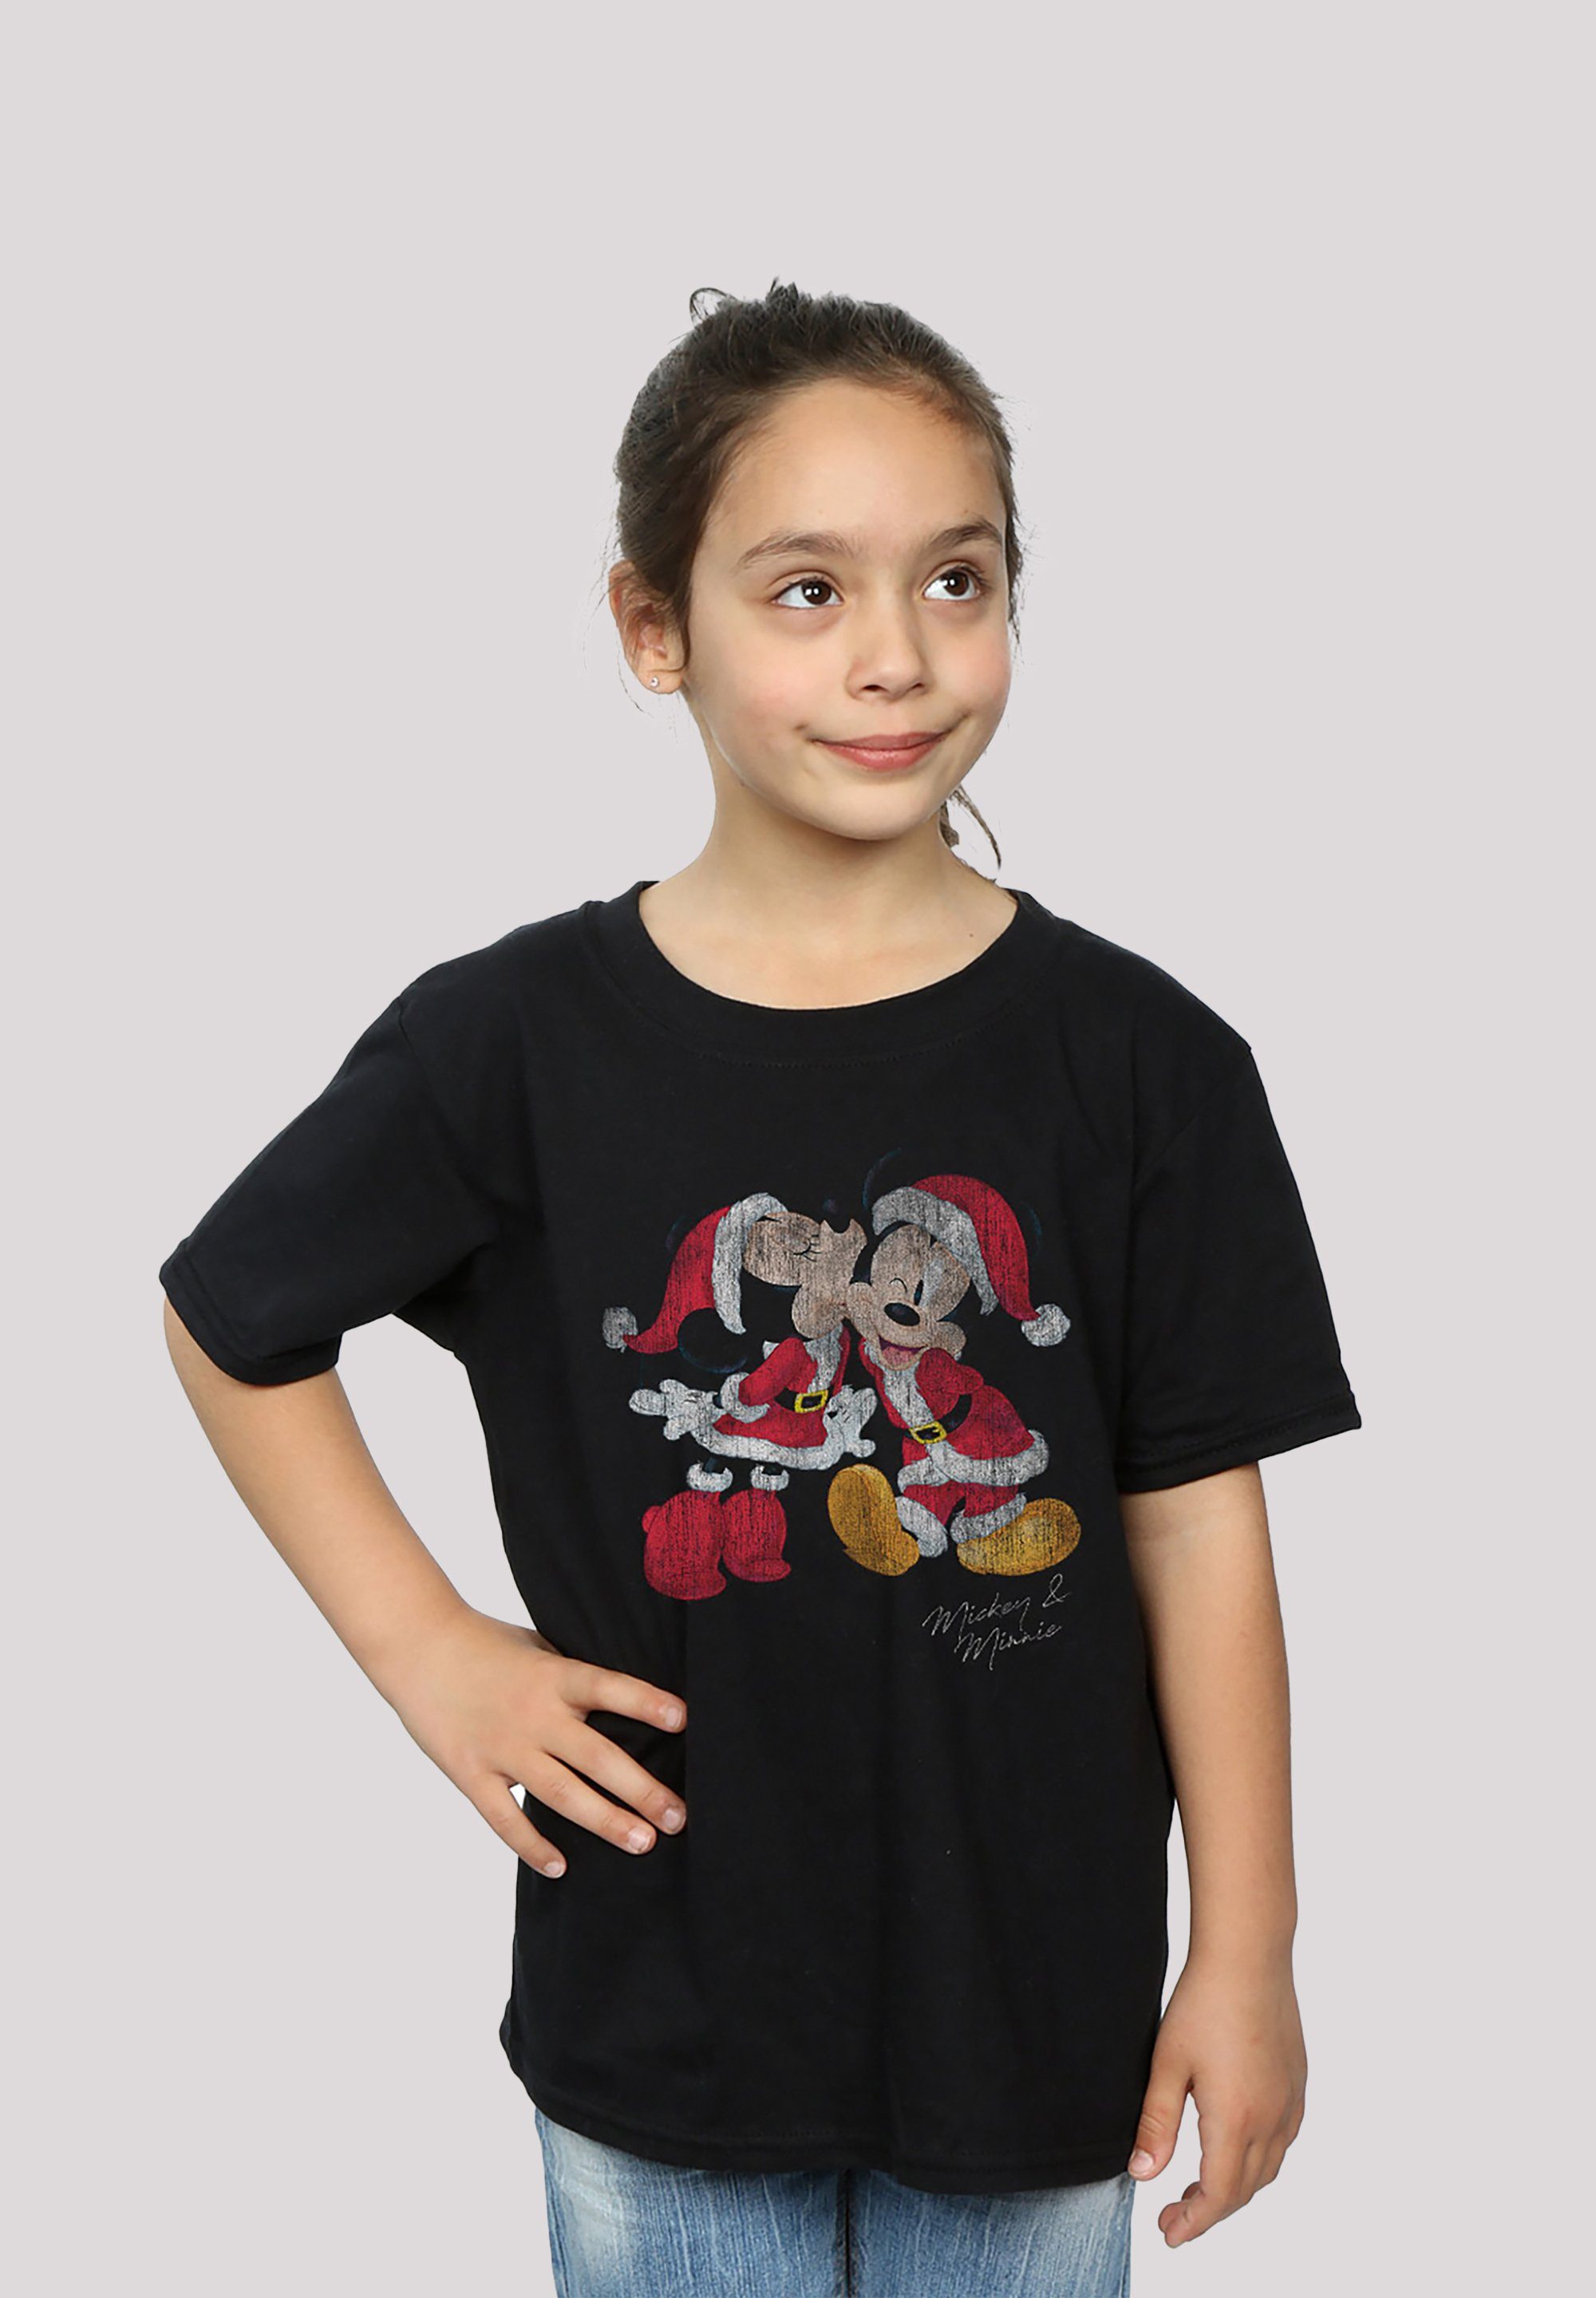 F4NT4STIC T-Shirt Disney Micky & Minnie Print Weihnachten schwarz